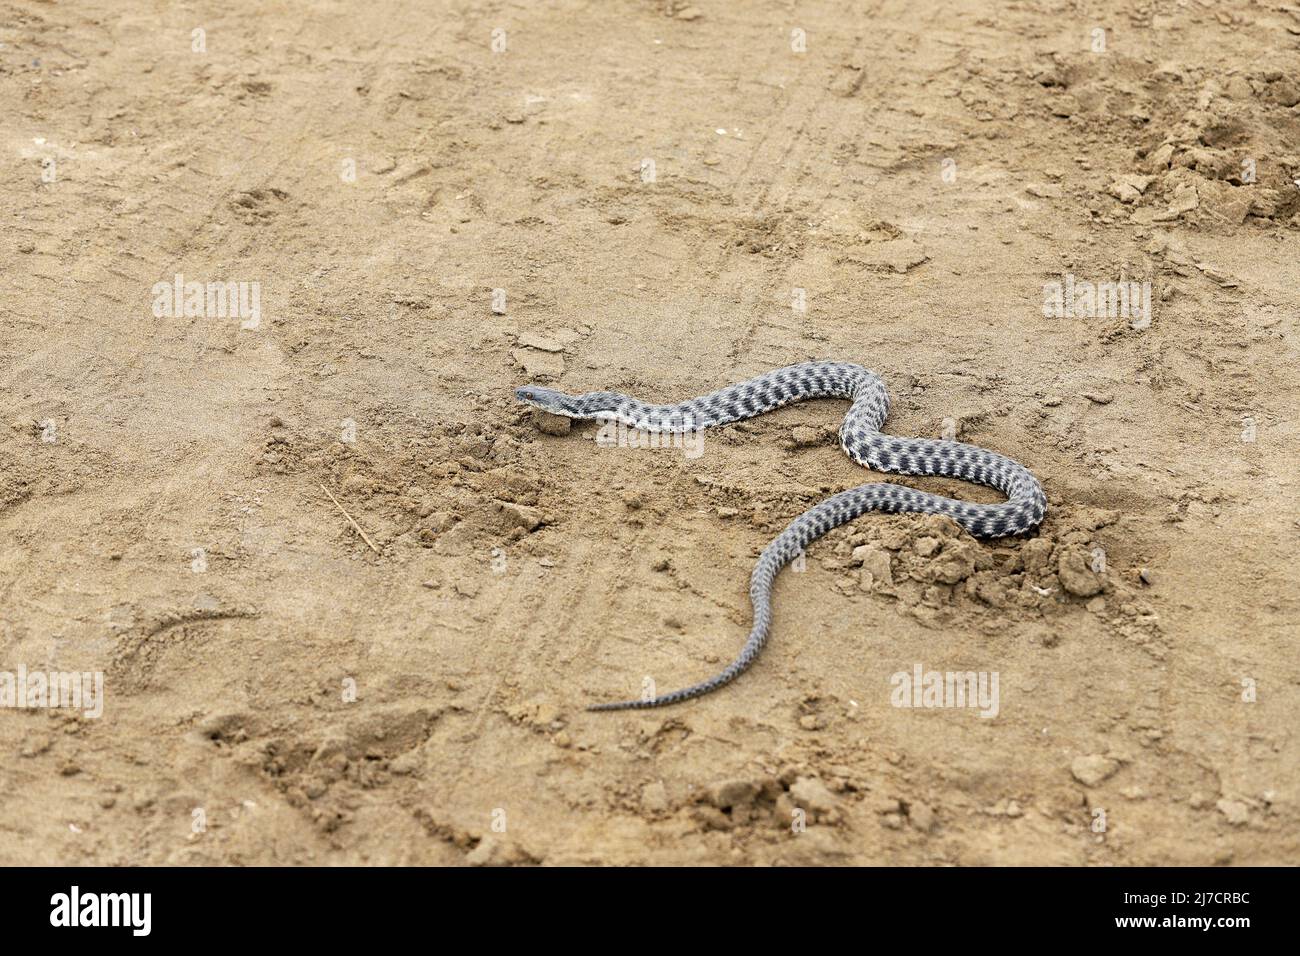 Eine nicht giftige Schlange kriecht entlang des gelben Sandes. Stockfoto